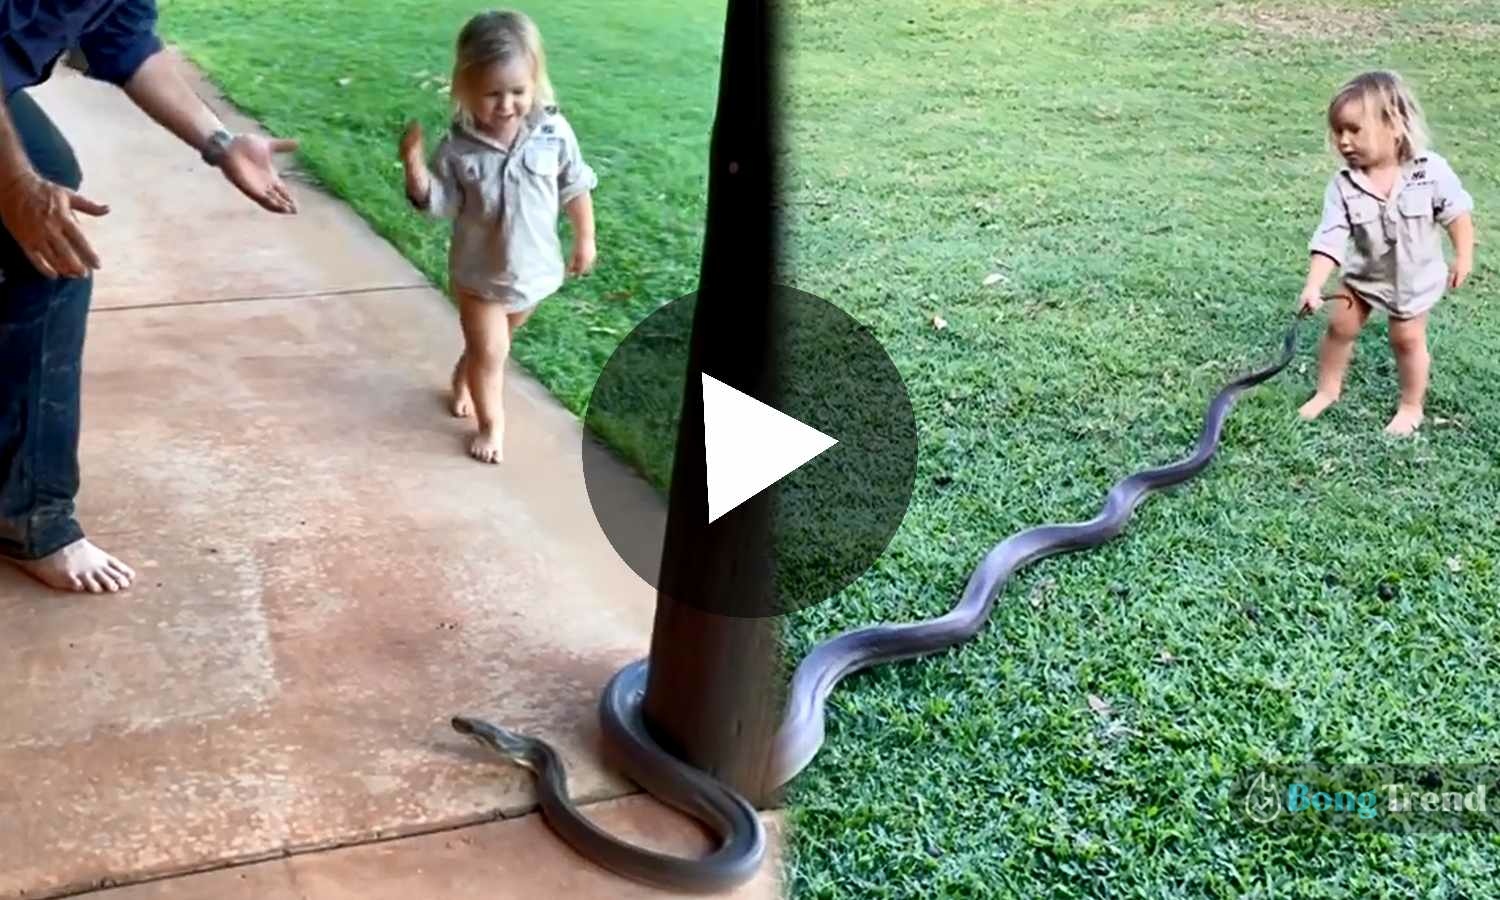 little girl pulling giant snake by tail viral video,ভাইরাল ভিডিও,সাপ,Viral Video,Giant Snake,Snake Video,little girl with giant snake